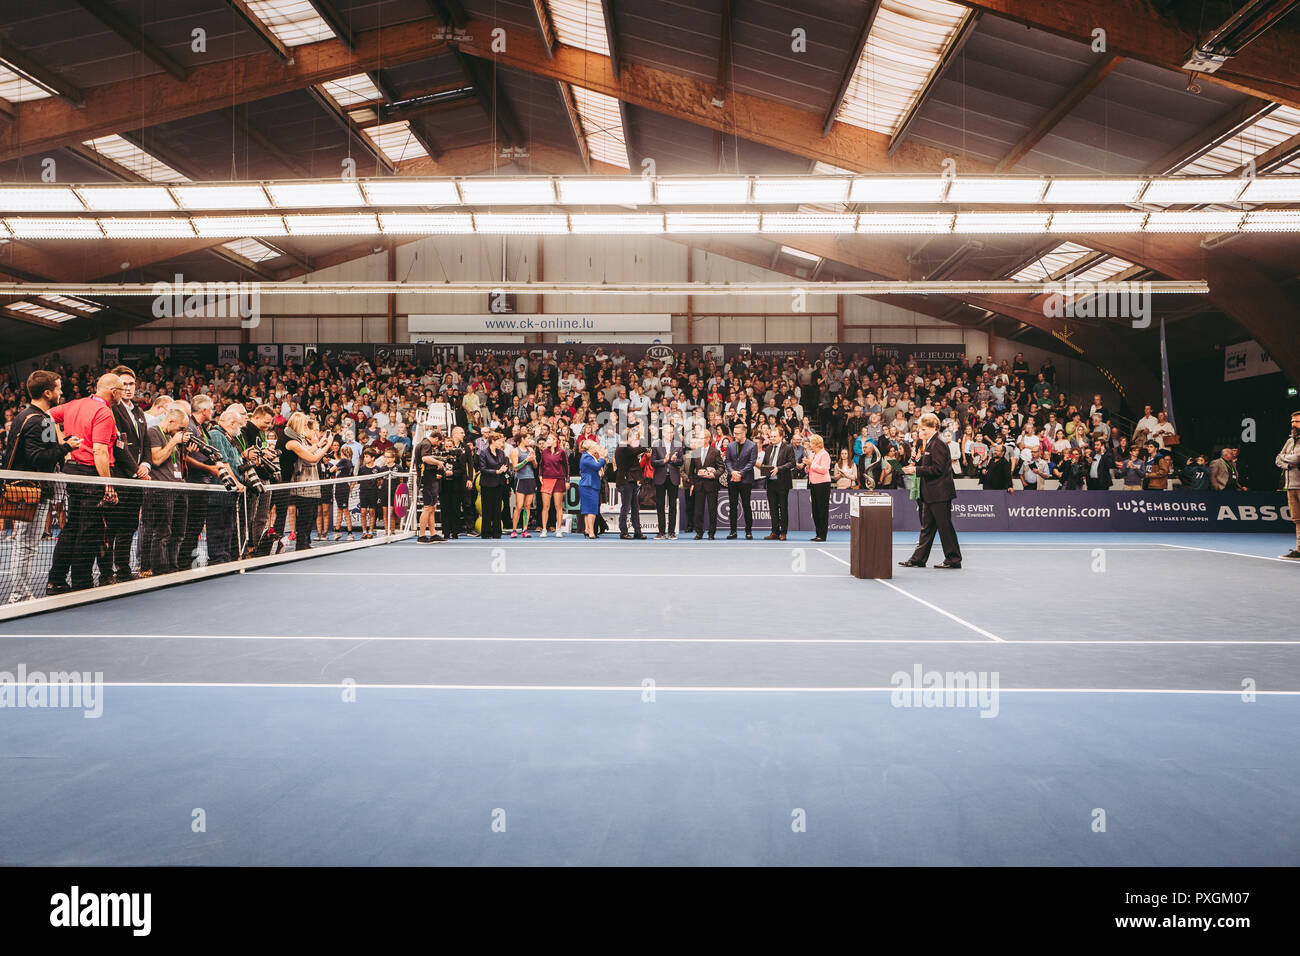 Lussemburgo/LUSSEMBURGO - Ottobre 20th, 2018: WTA BGL BNPPARIBAS Lussemburgo aperto - partita finale tra Julia Görges e belinda Bencic Foto Stock